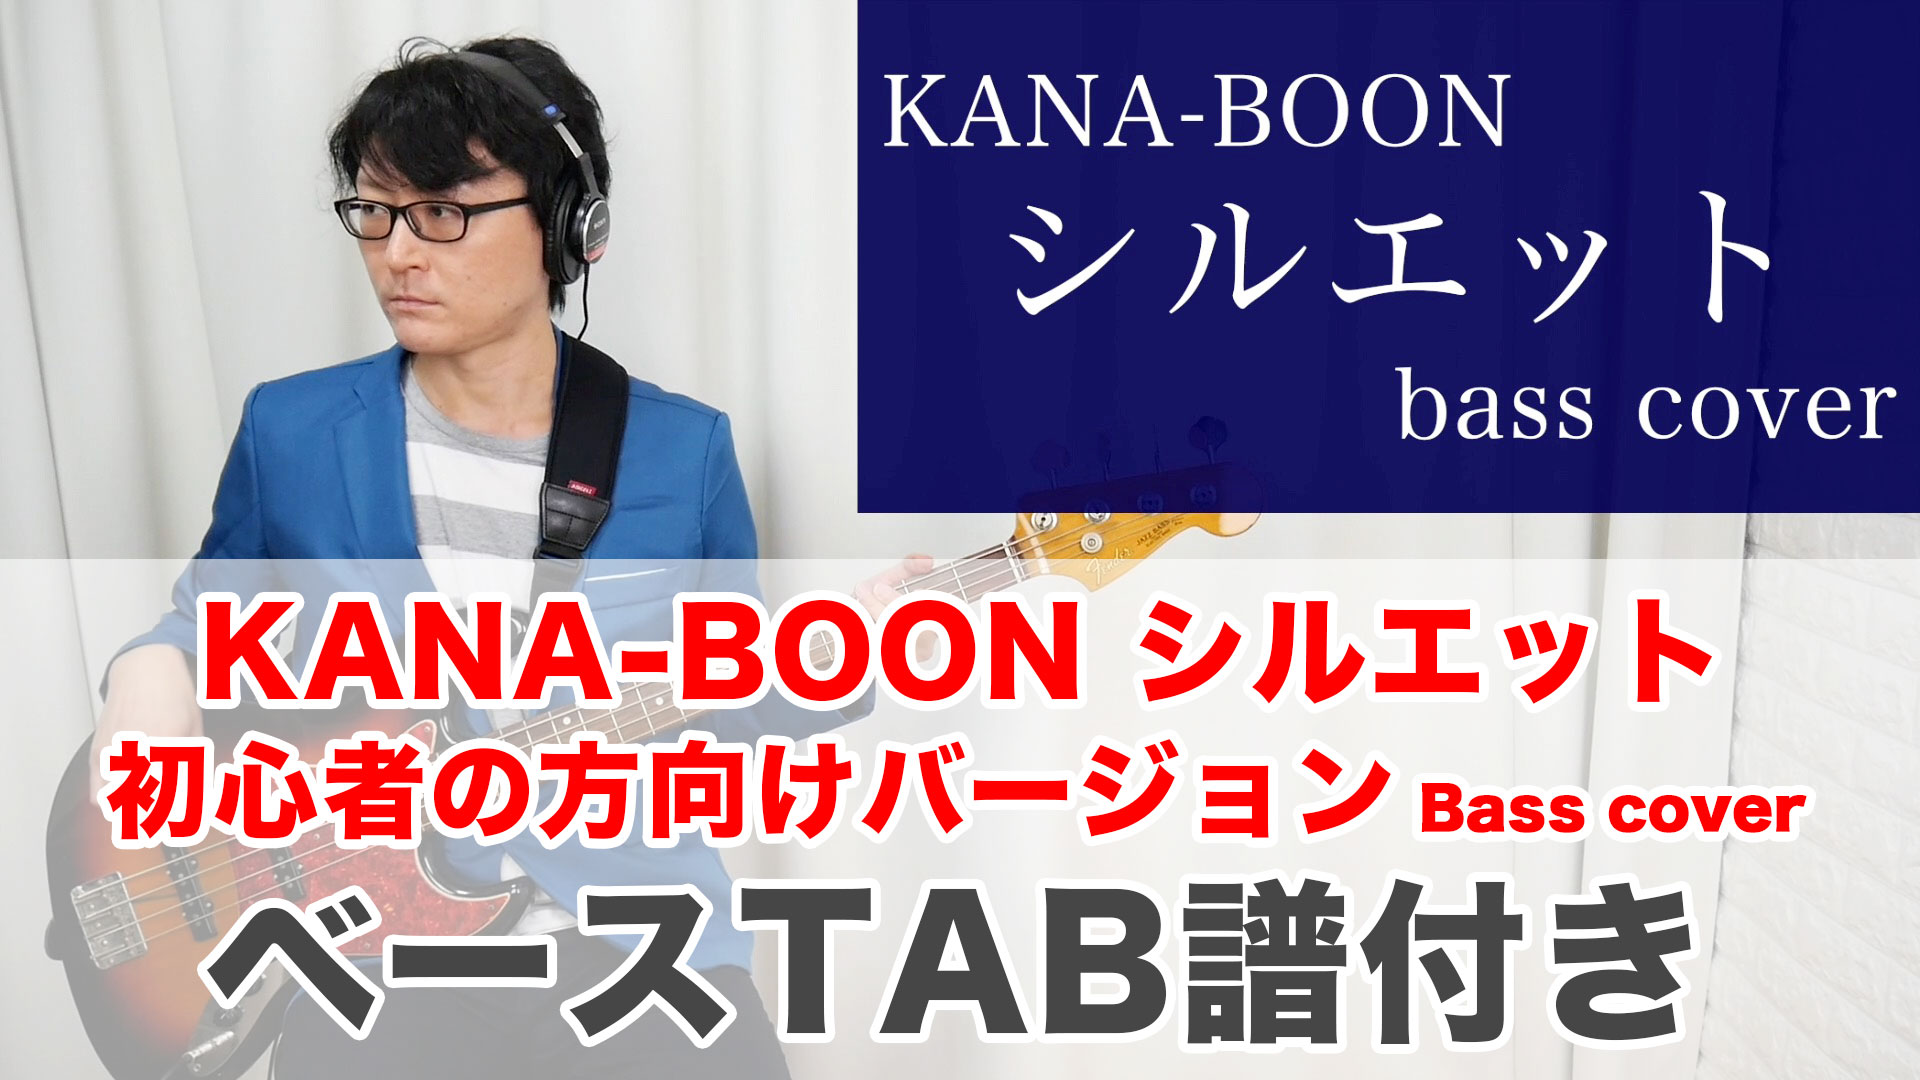 シルエット ベースtab ベースカバー 弾いてみた 初心者向け タブ譜あり Kana Boon カナブーン Youtube動画更新情報